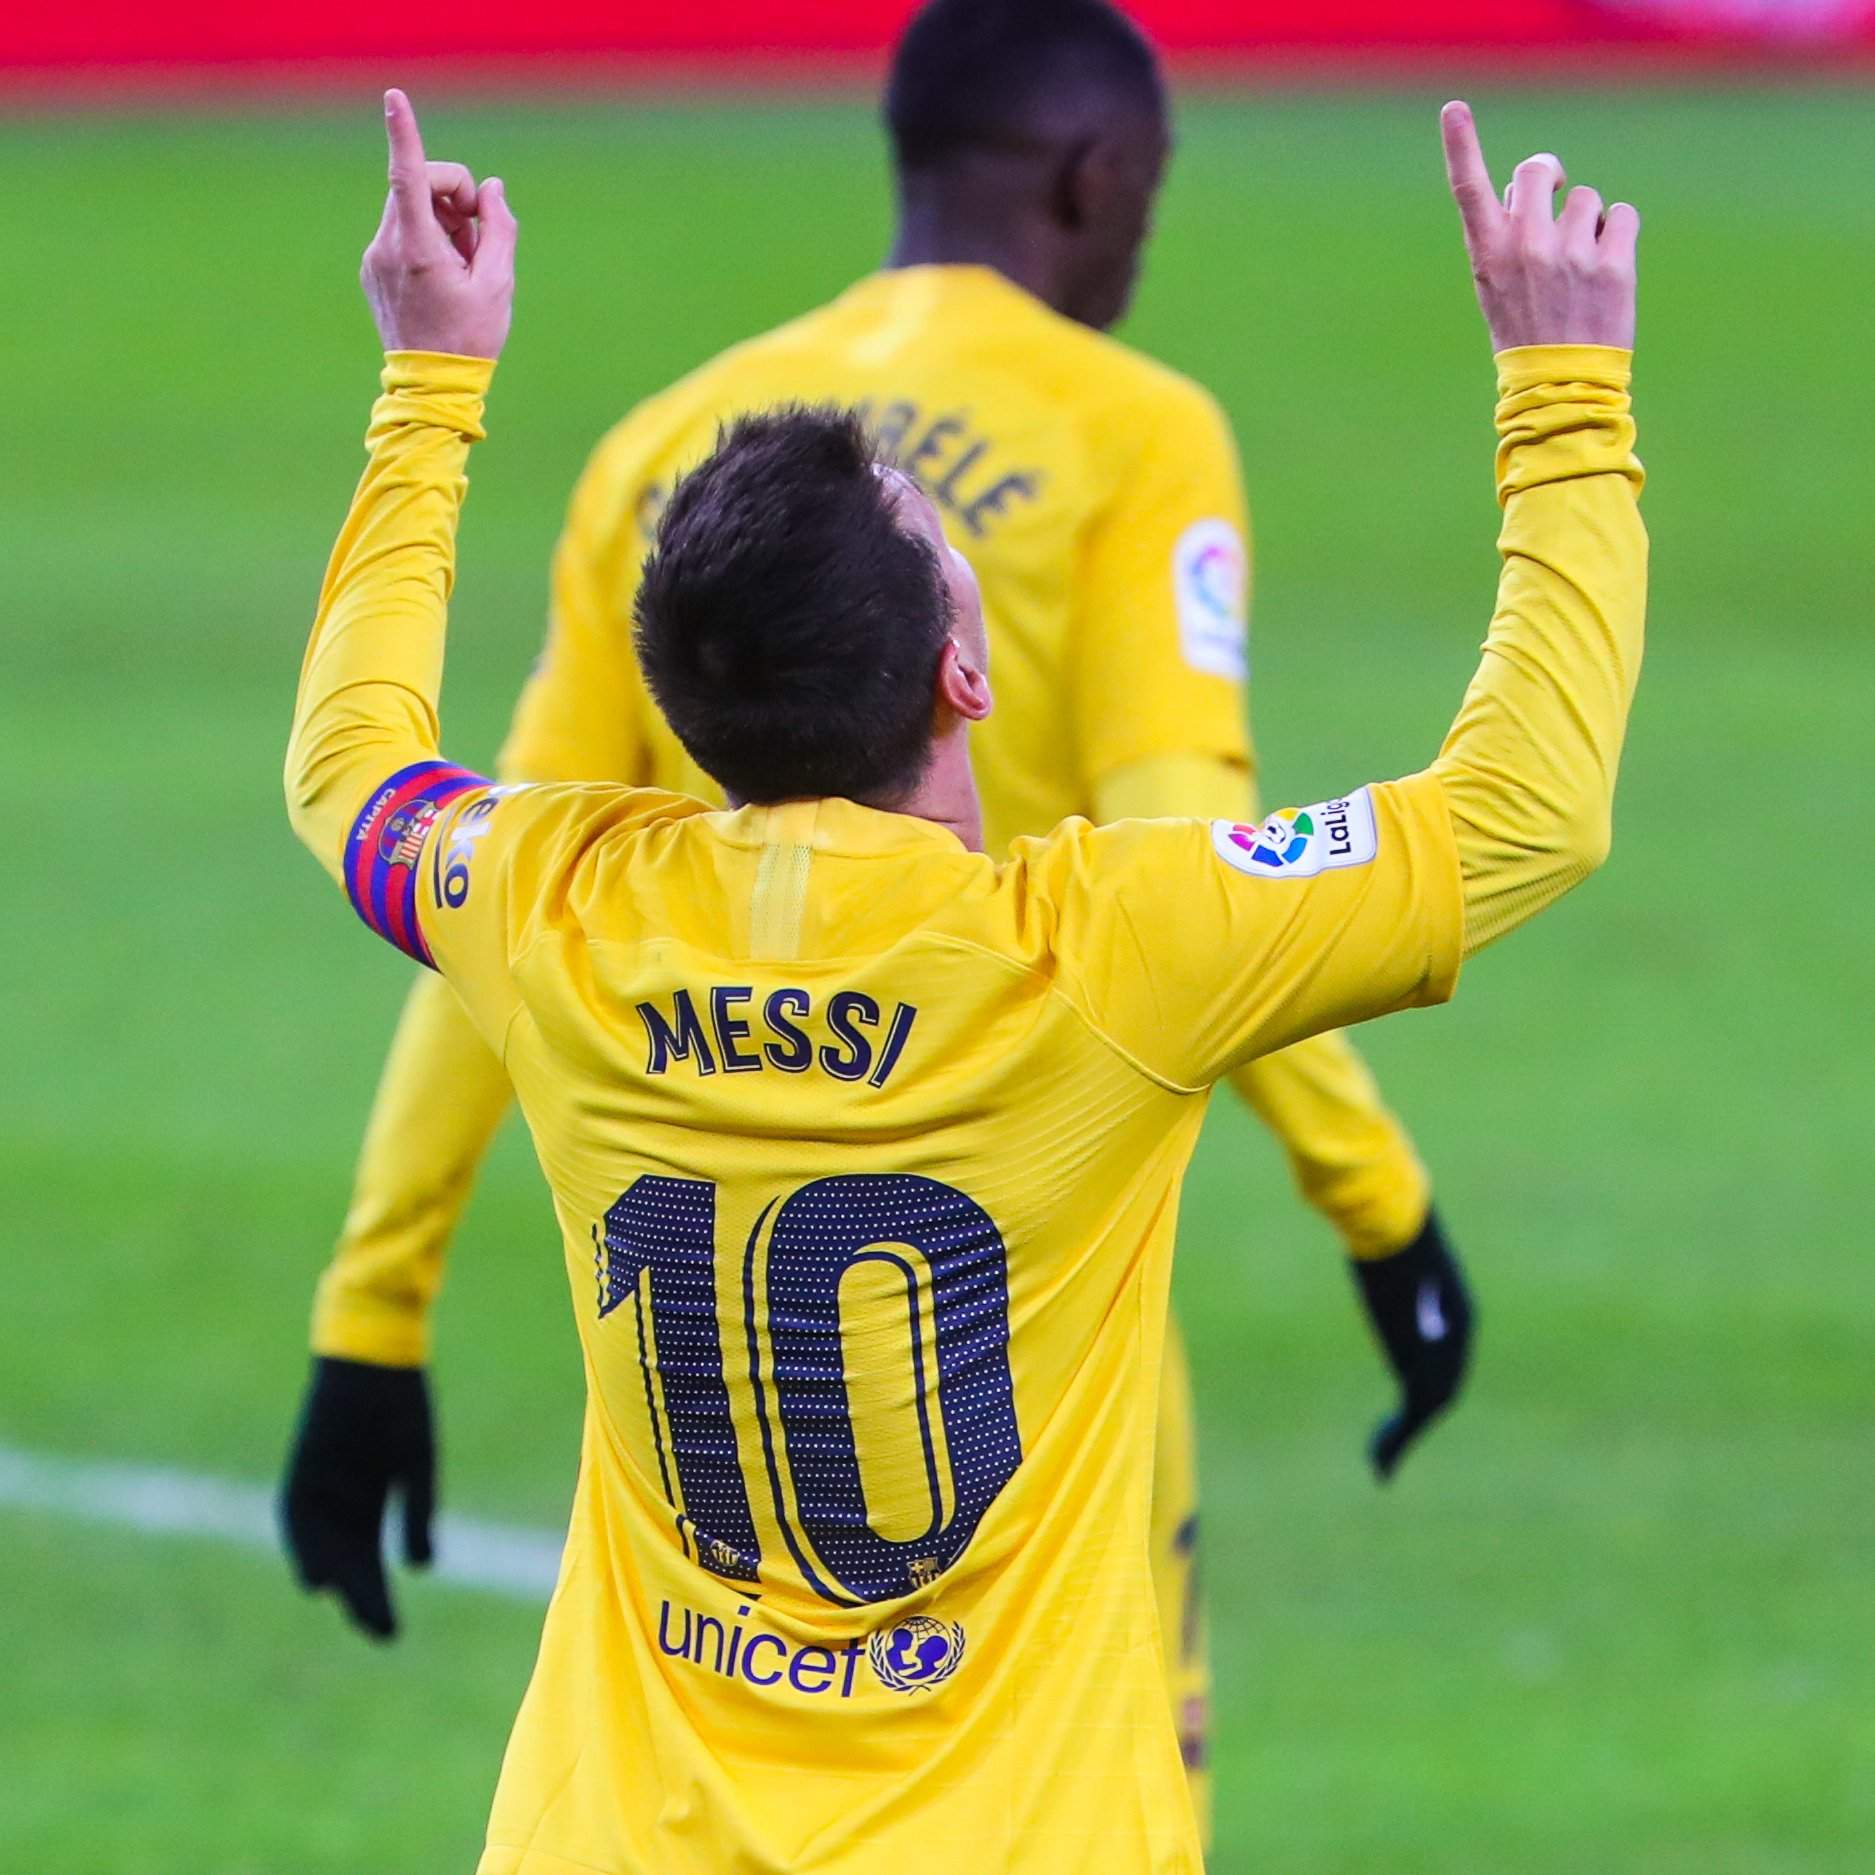 Lionel Messi deixa o Barcelona depois de impasse com liga espanhola